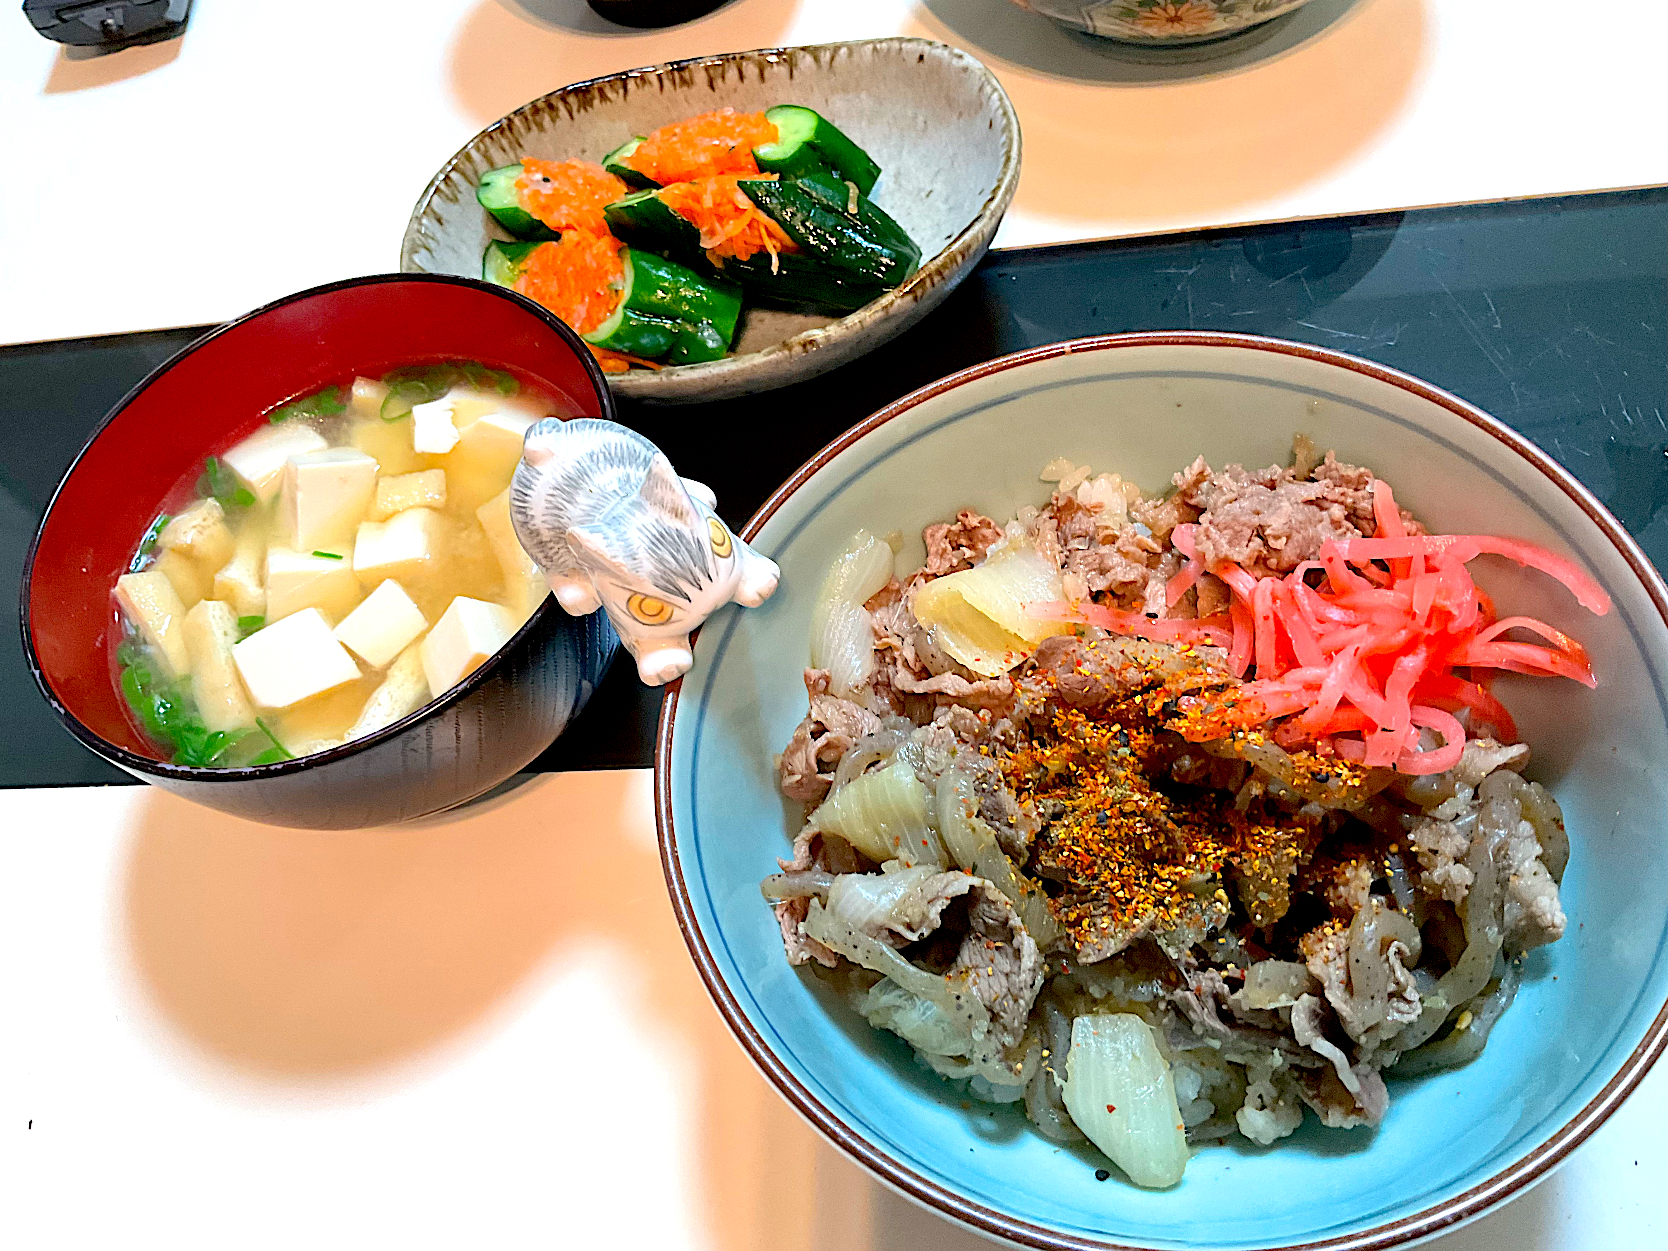 休麺日
吉牛風の味付けの牛丼
と
豆腐とお揚げさんのお味噌汁
と
オイキムチ